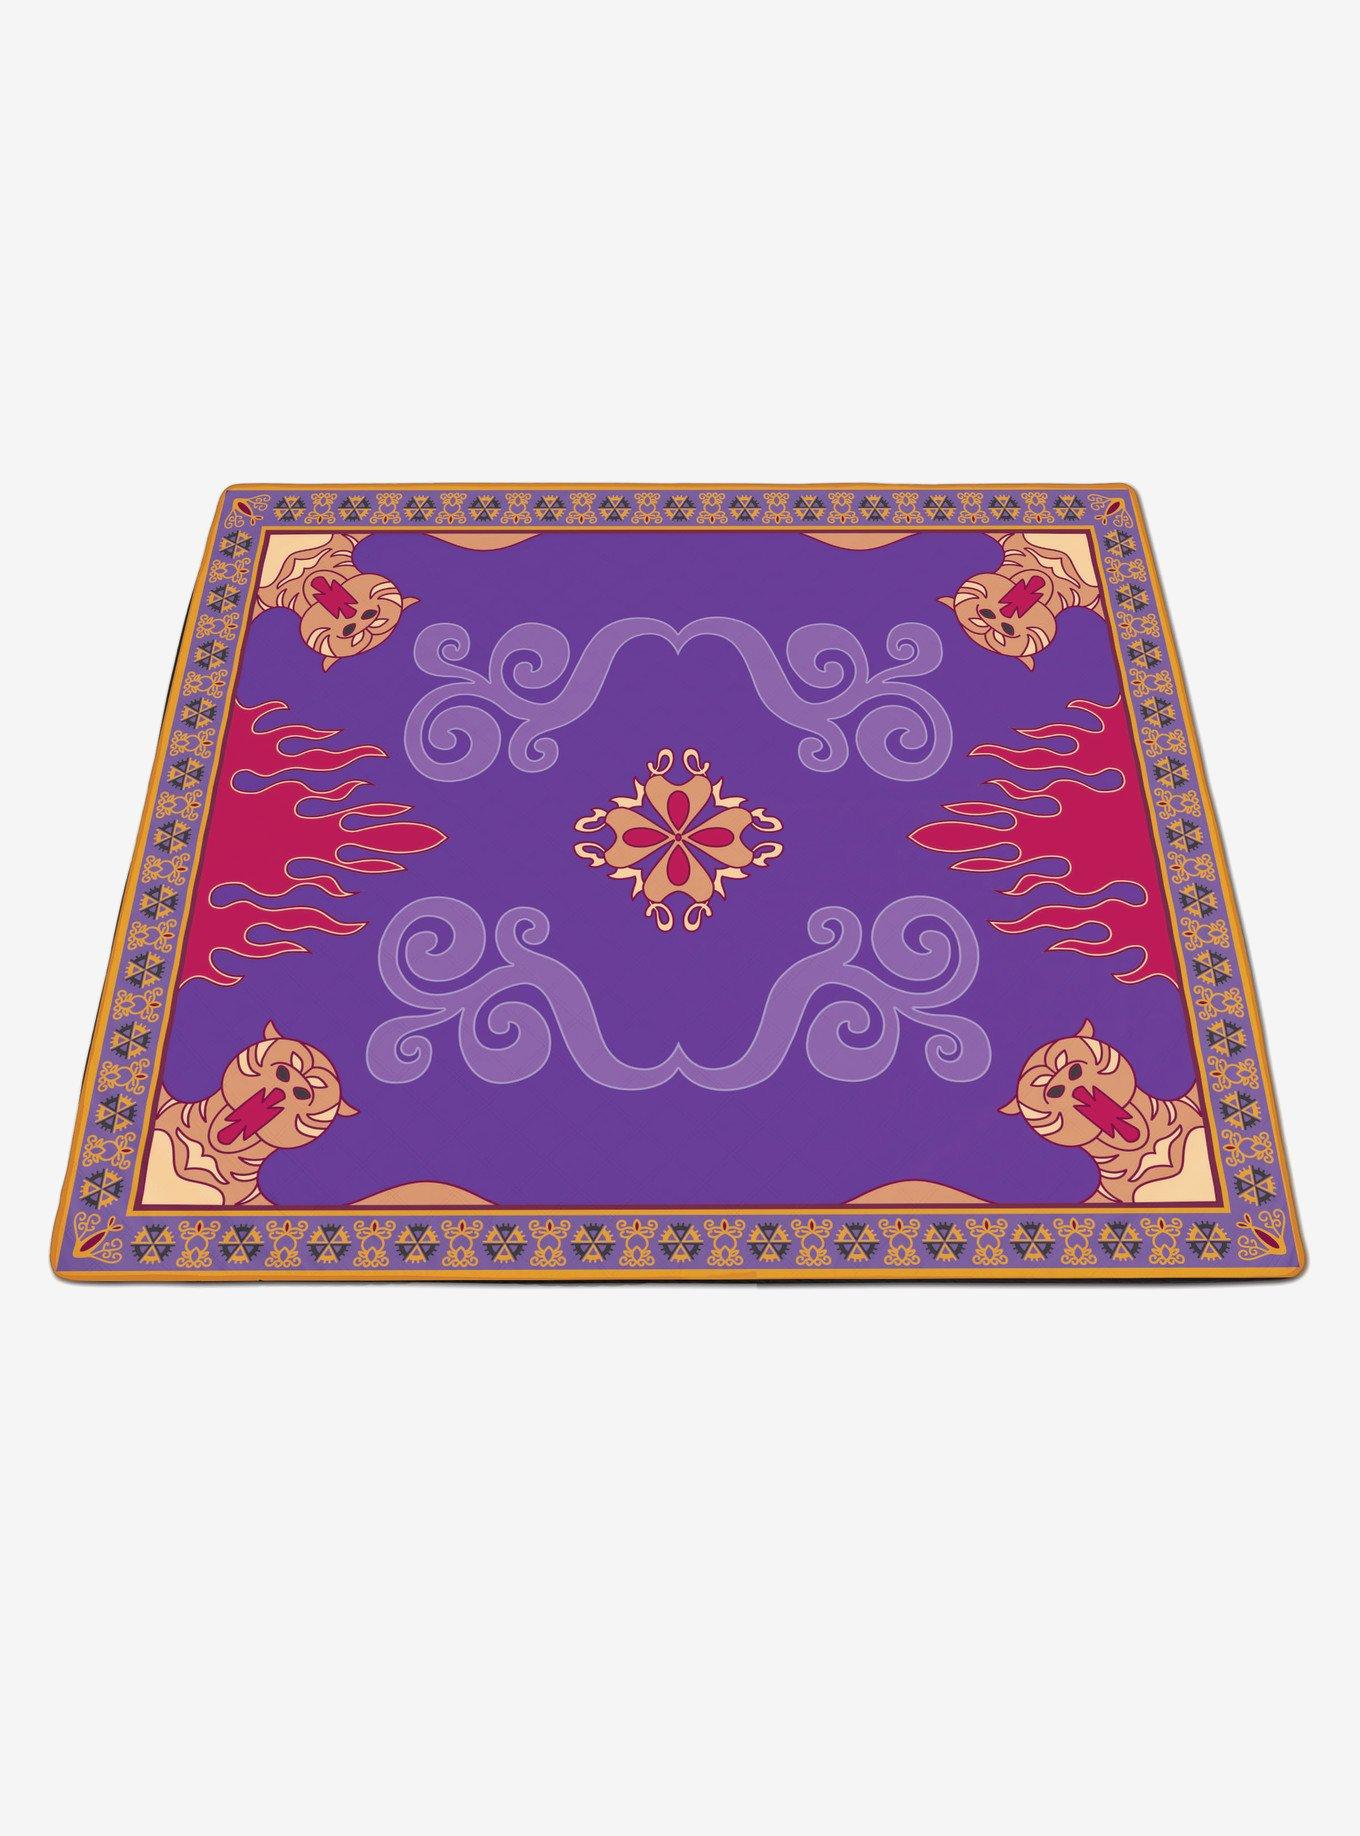 Disney Aladdin Impresa Picnic Blanket